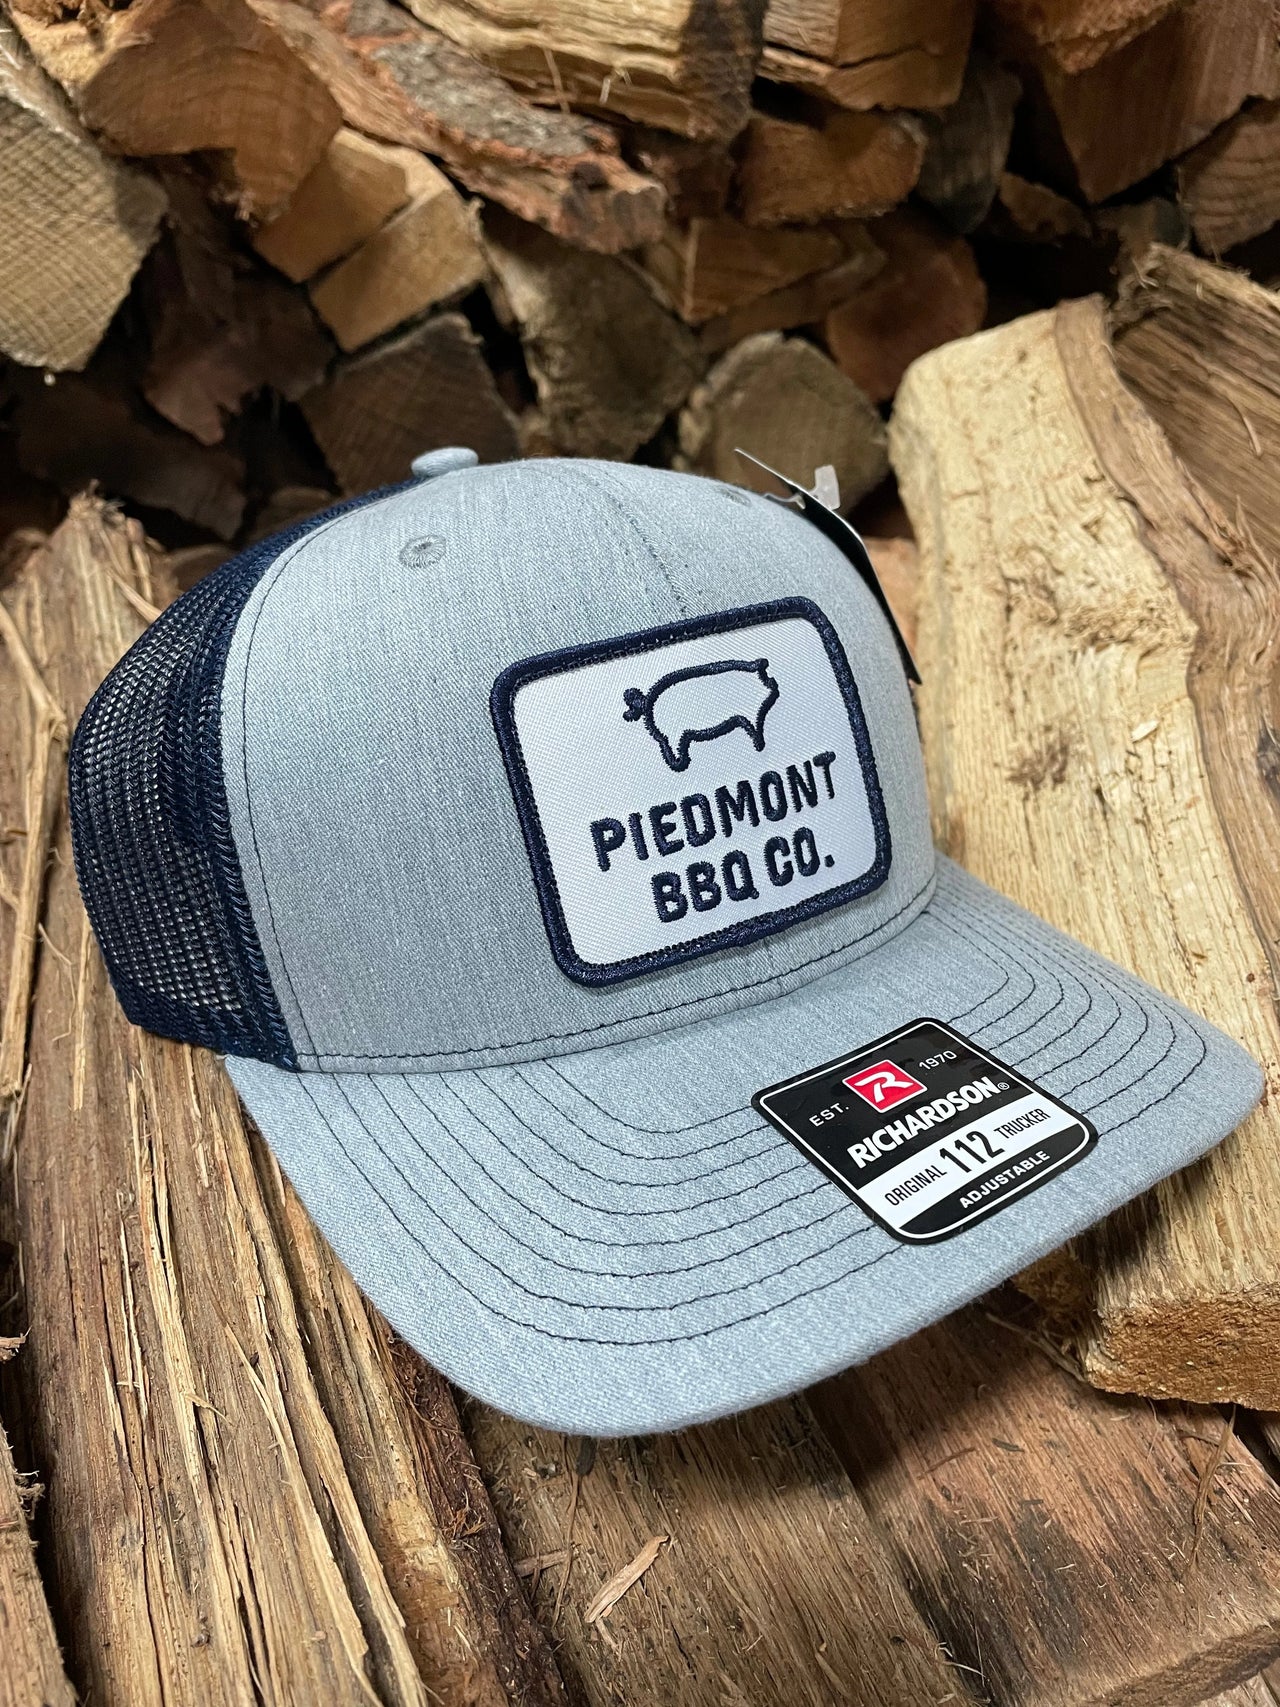 PBBQ Hats - piedmont bbq